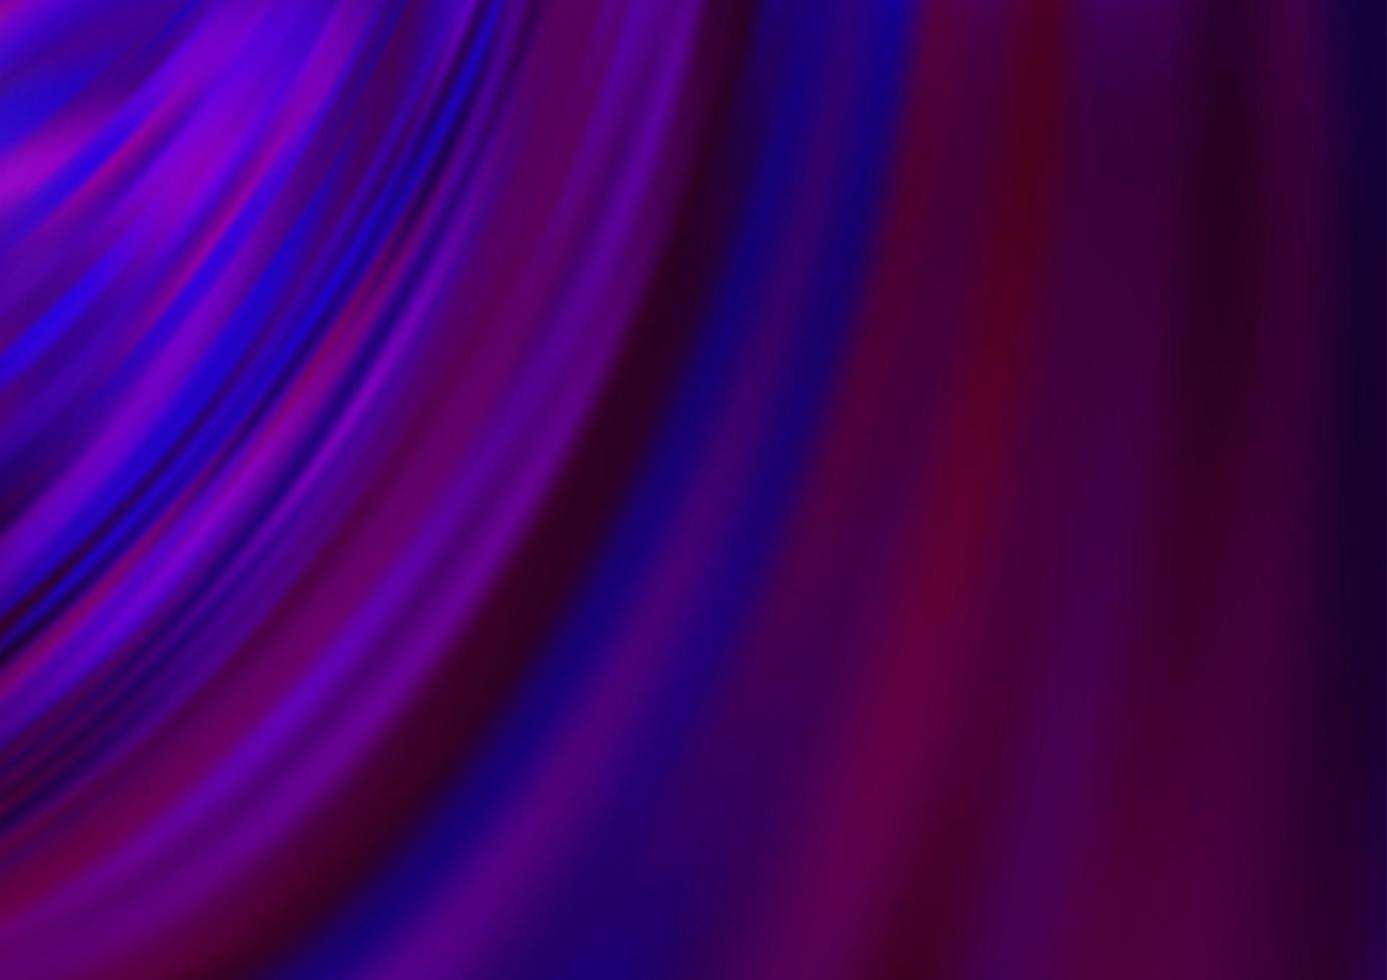 patrón de vector púrpura oscuro con cintas dobladas.